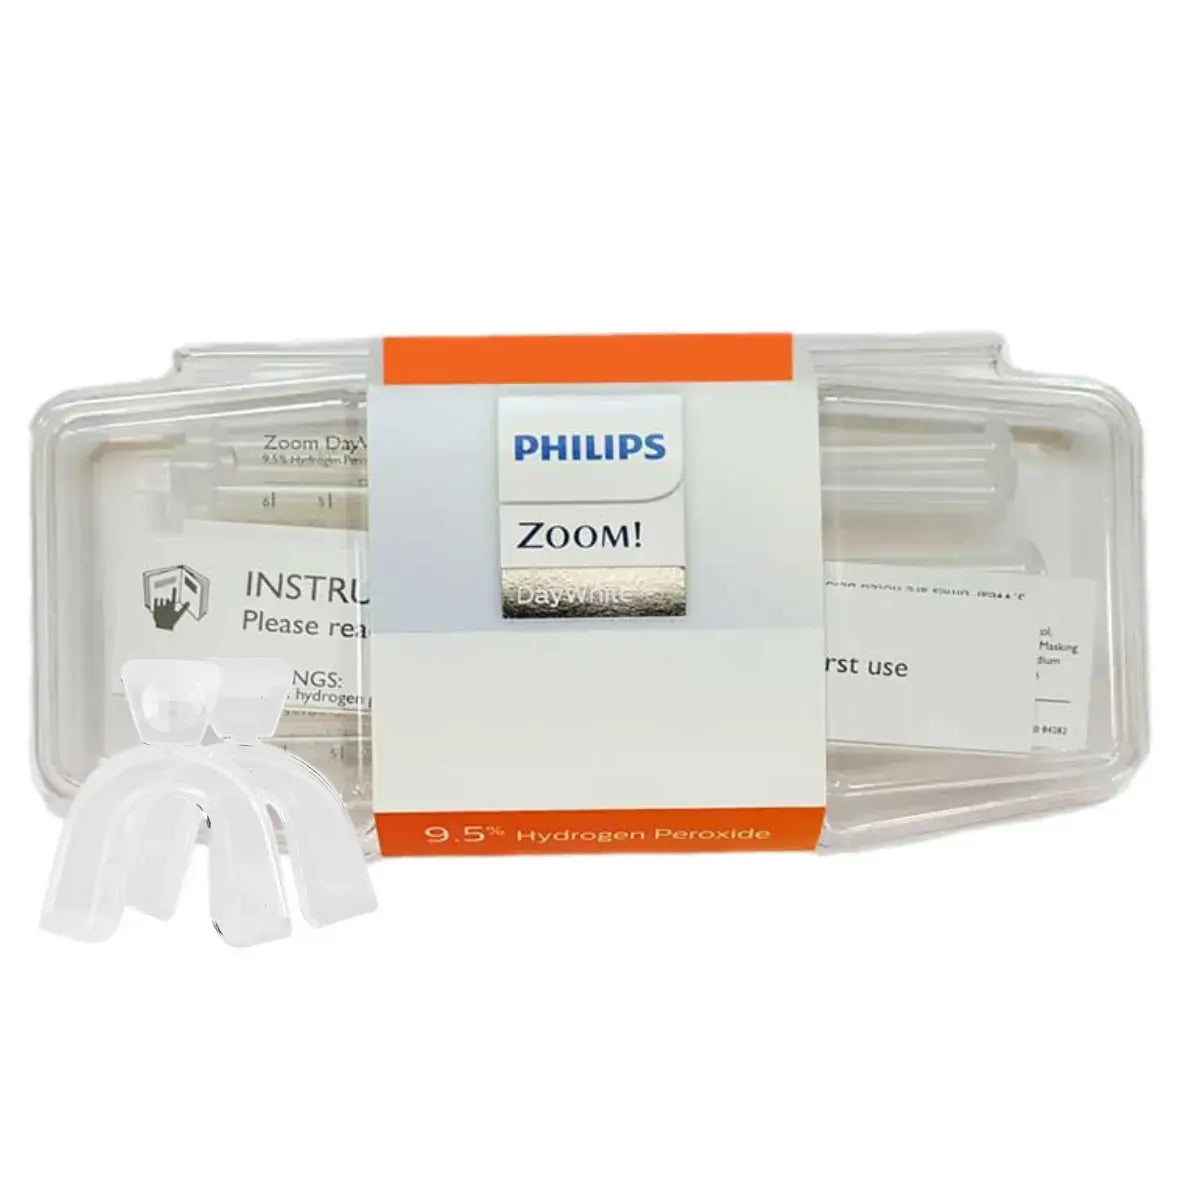 Bleekgel Philips Zoom Daywhite 9,5%